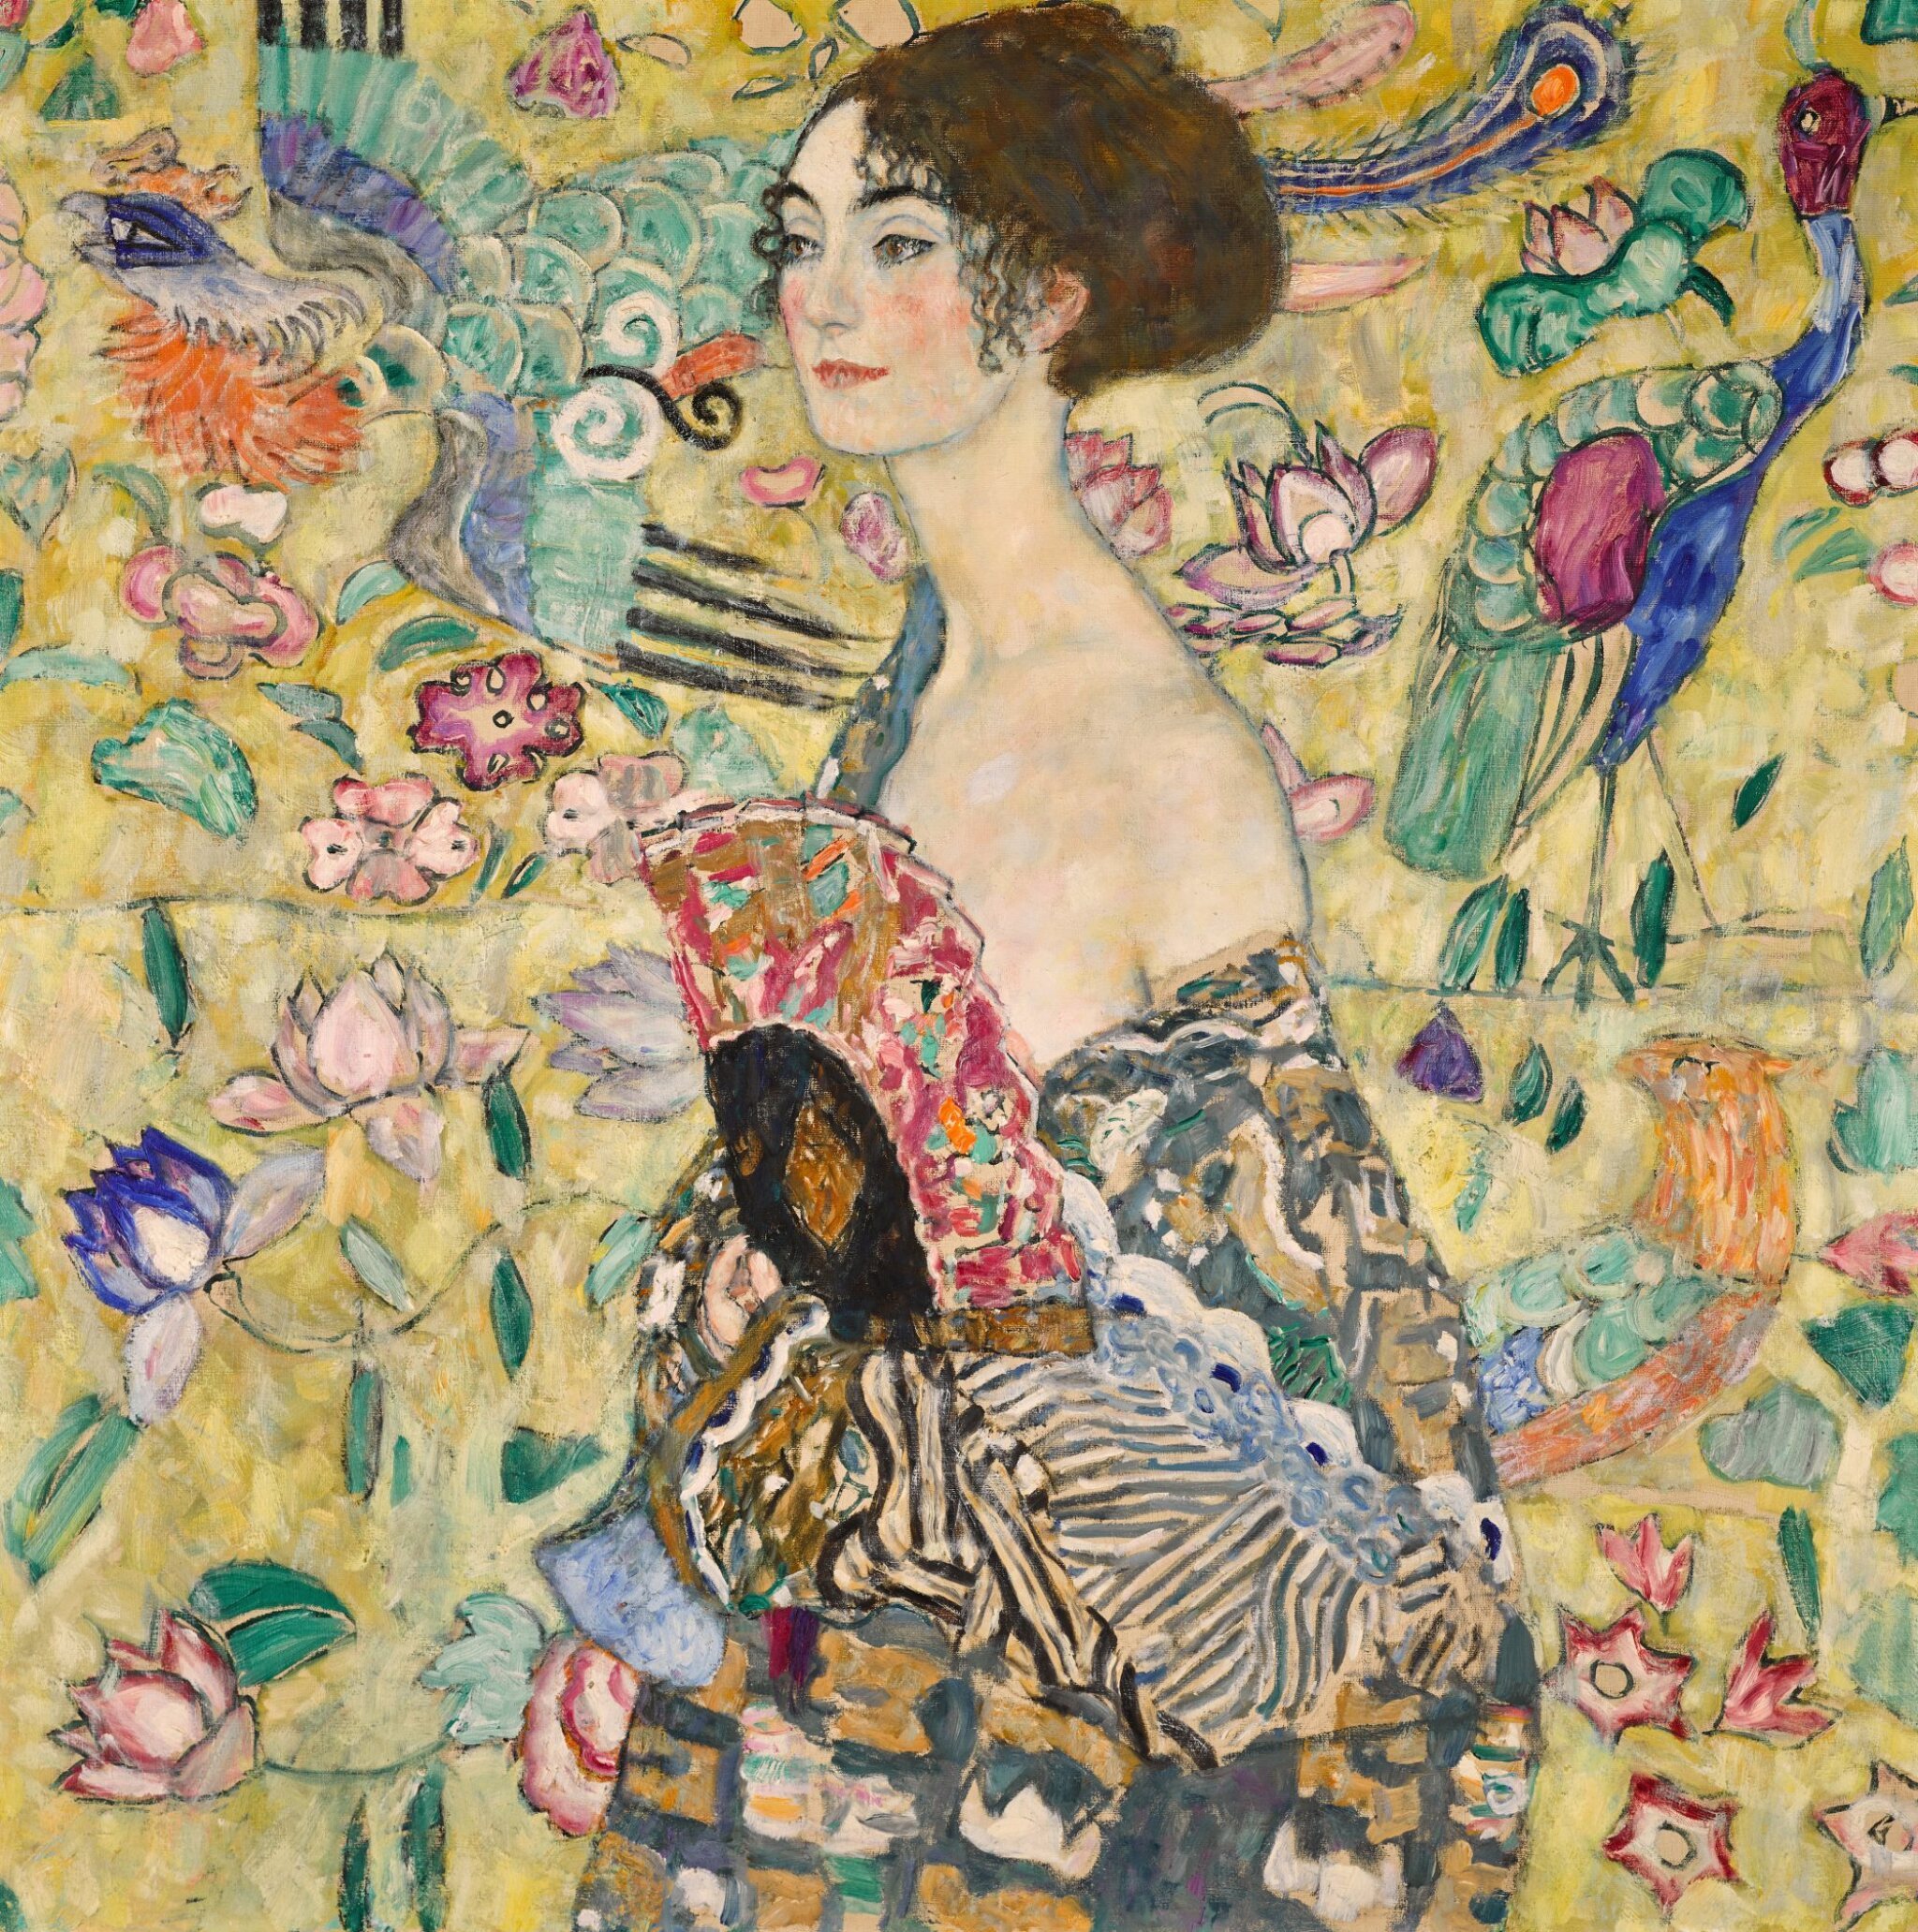 부채를 든 여인(Lady With a Fan) by 구스타프 클림트 - 1917-1918 - 100.2 x 100.2 cm 